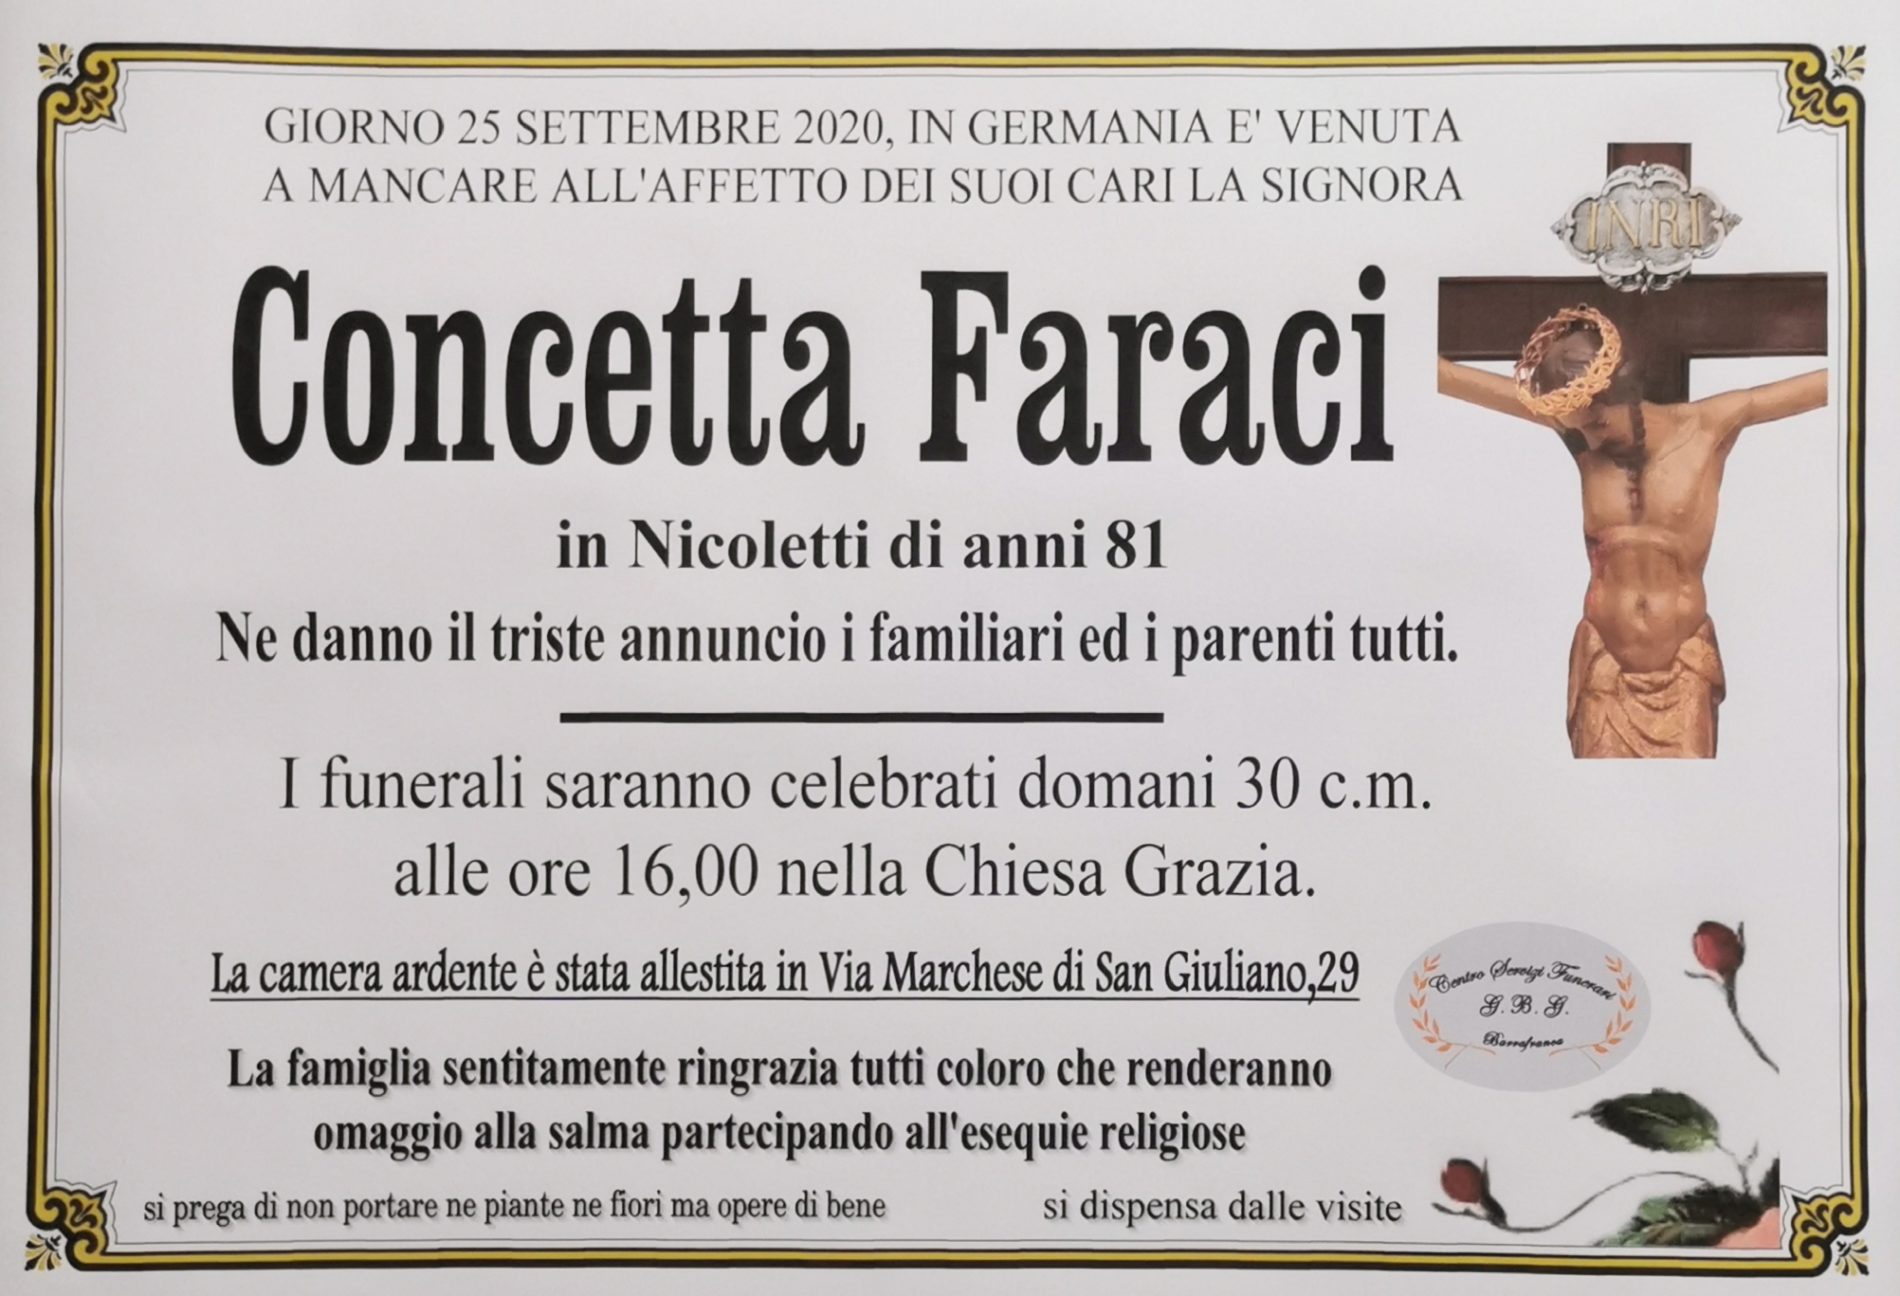 Annuncio servizi funerari G.B.G  Sig.ra Concetta Faraci in Nicoletti anni 81